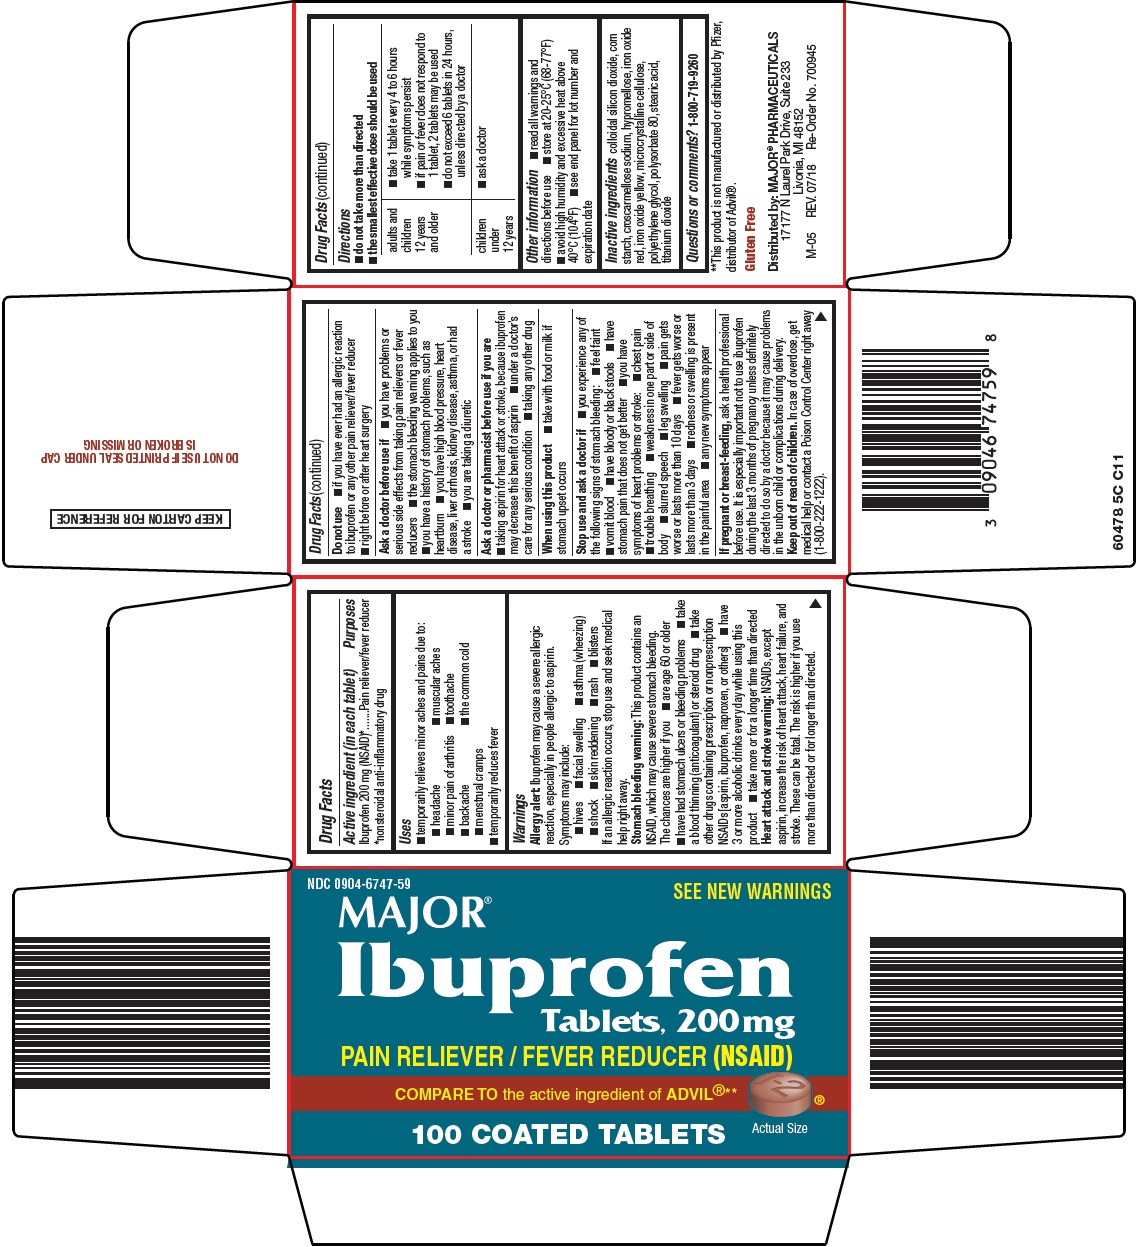 604-5c-ibuprofen.jpg